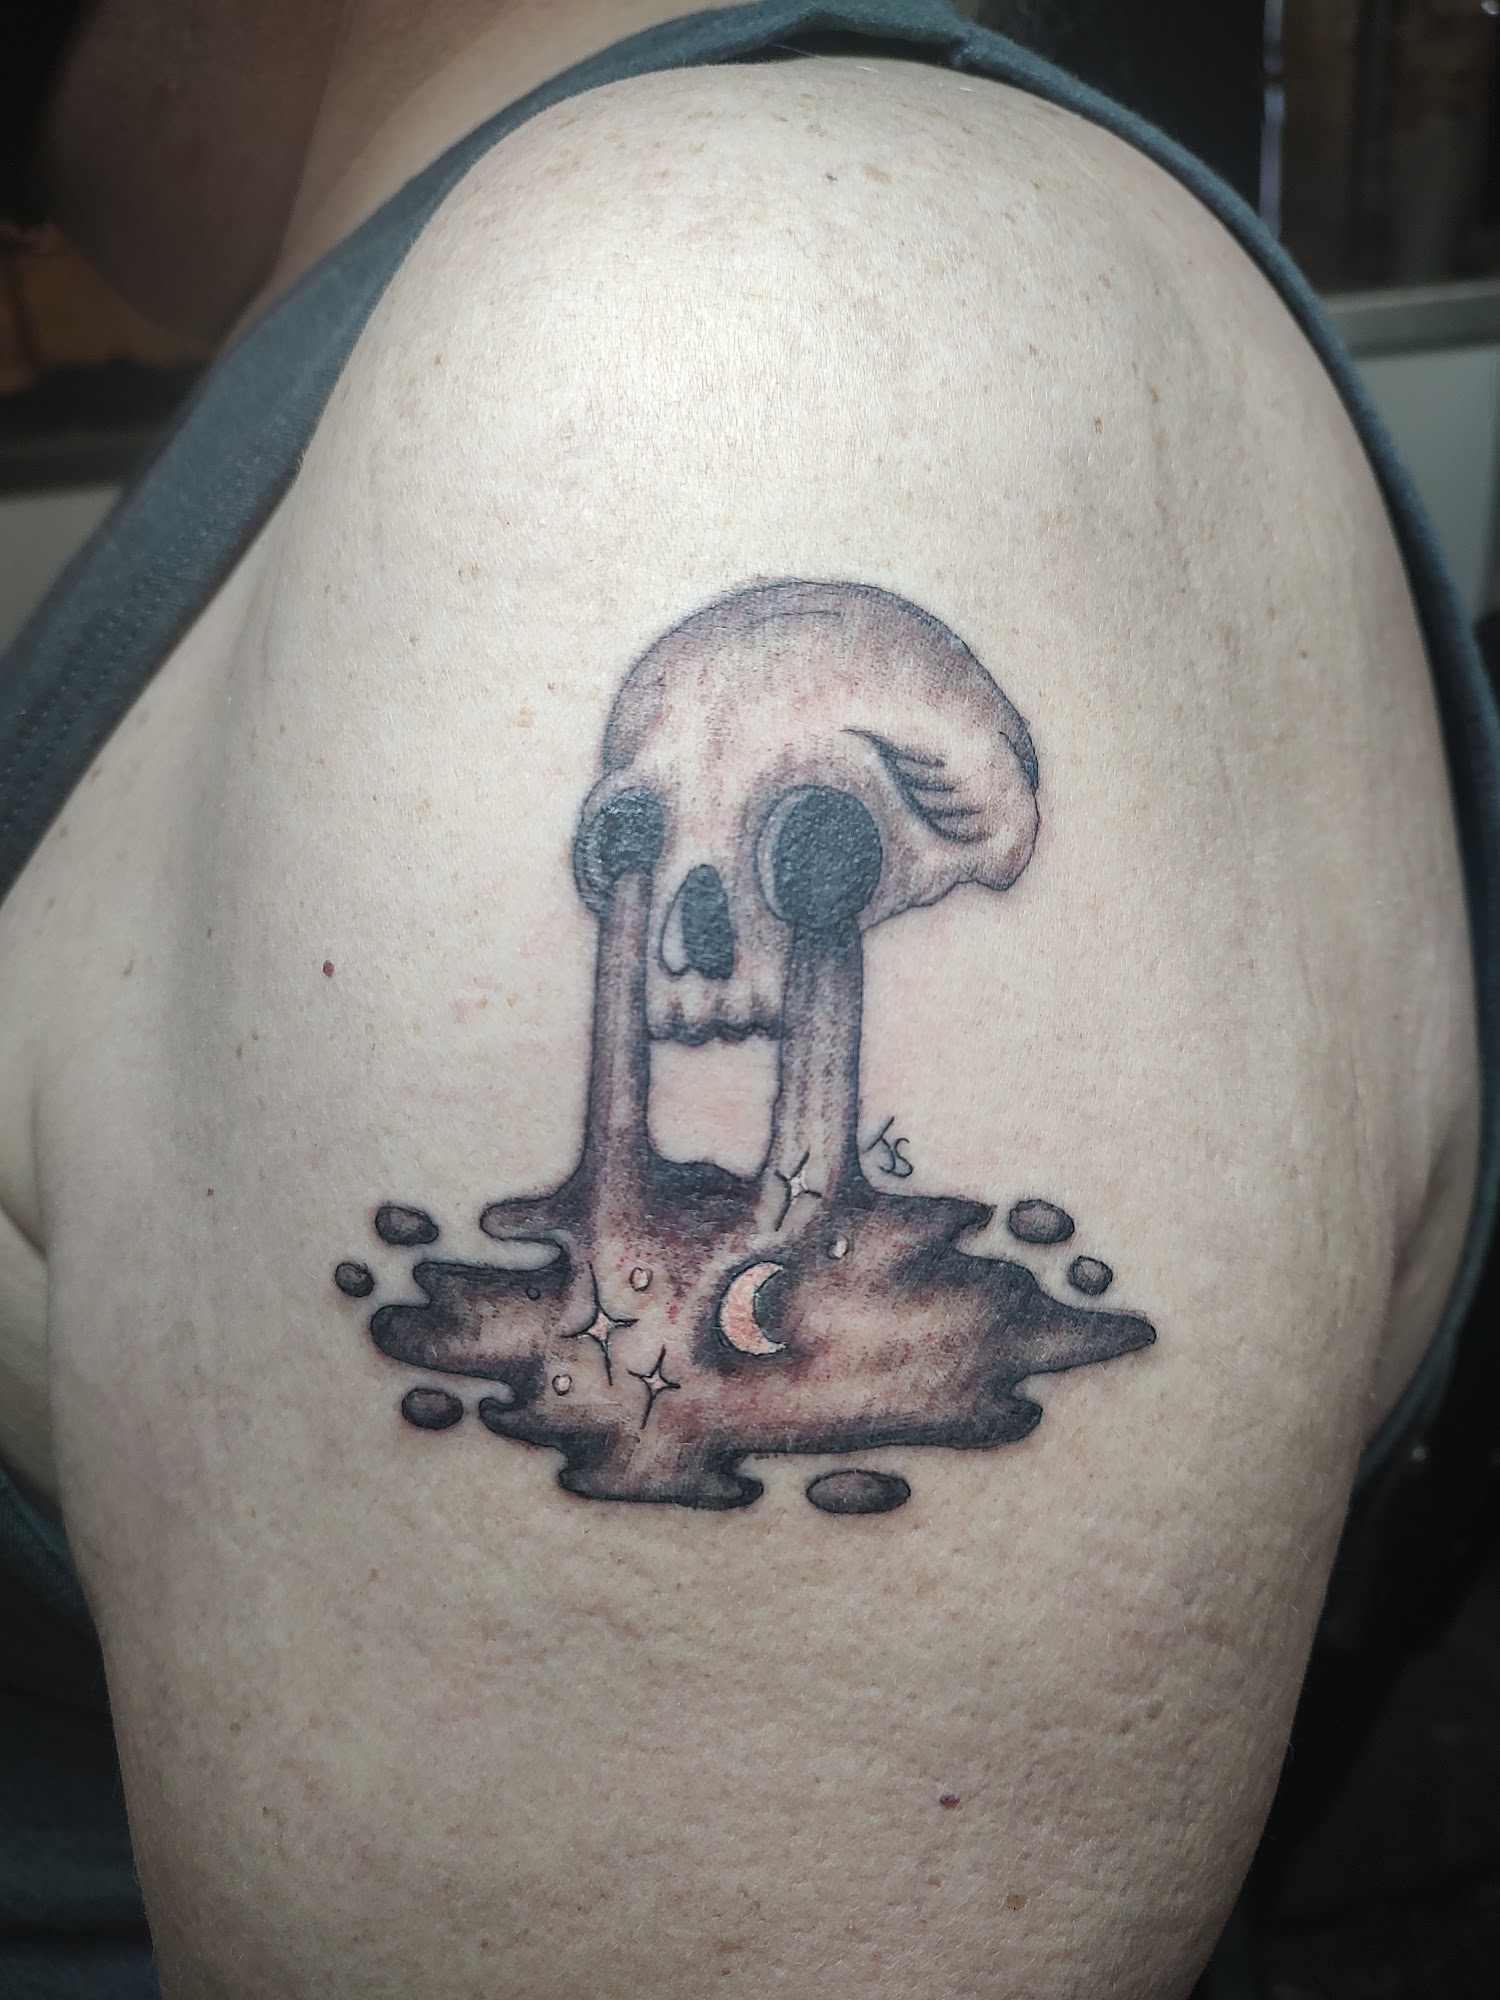 Jeff's Tattoo